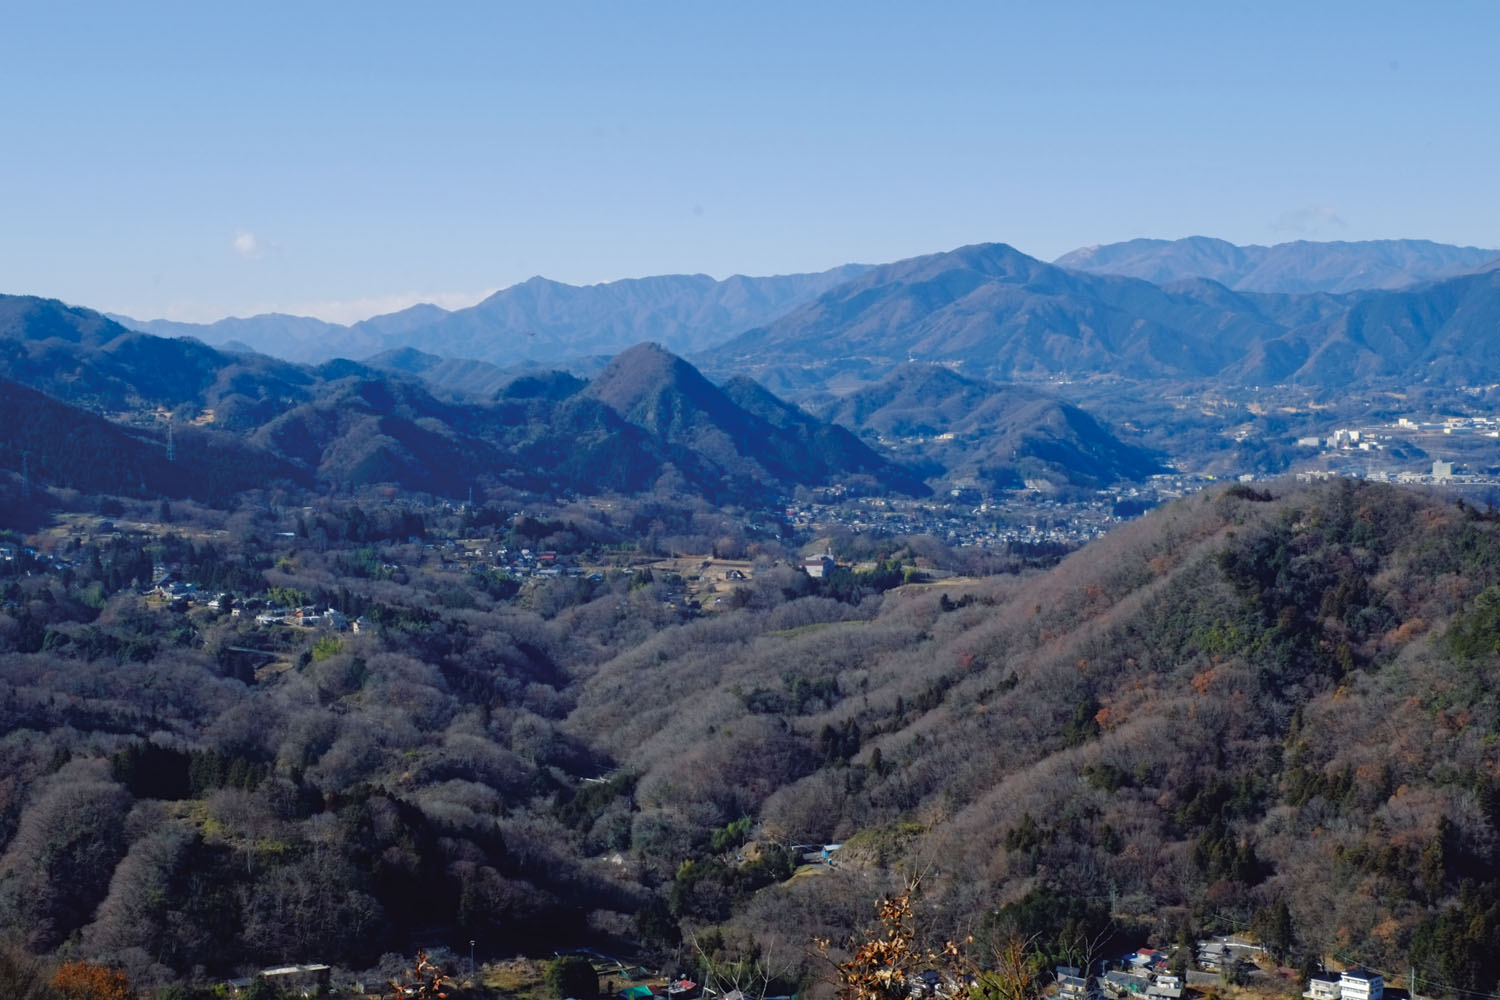 鉢岡山からの眺望。中央左の小高い山は鶴島御前山、その奥の左のピラミダルな山は滝子山。右手のどっしりした山は権現山。